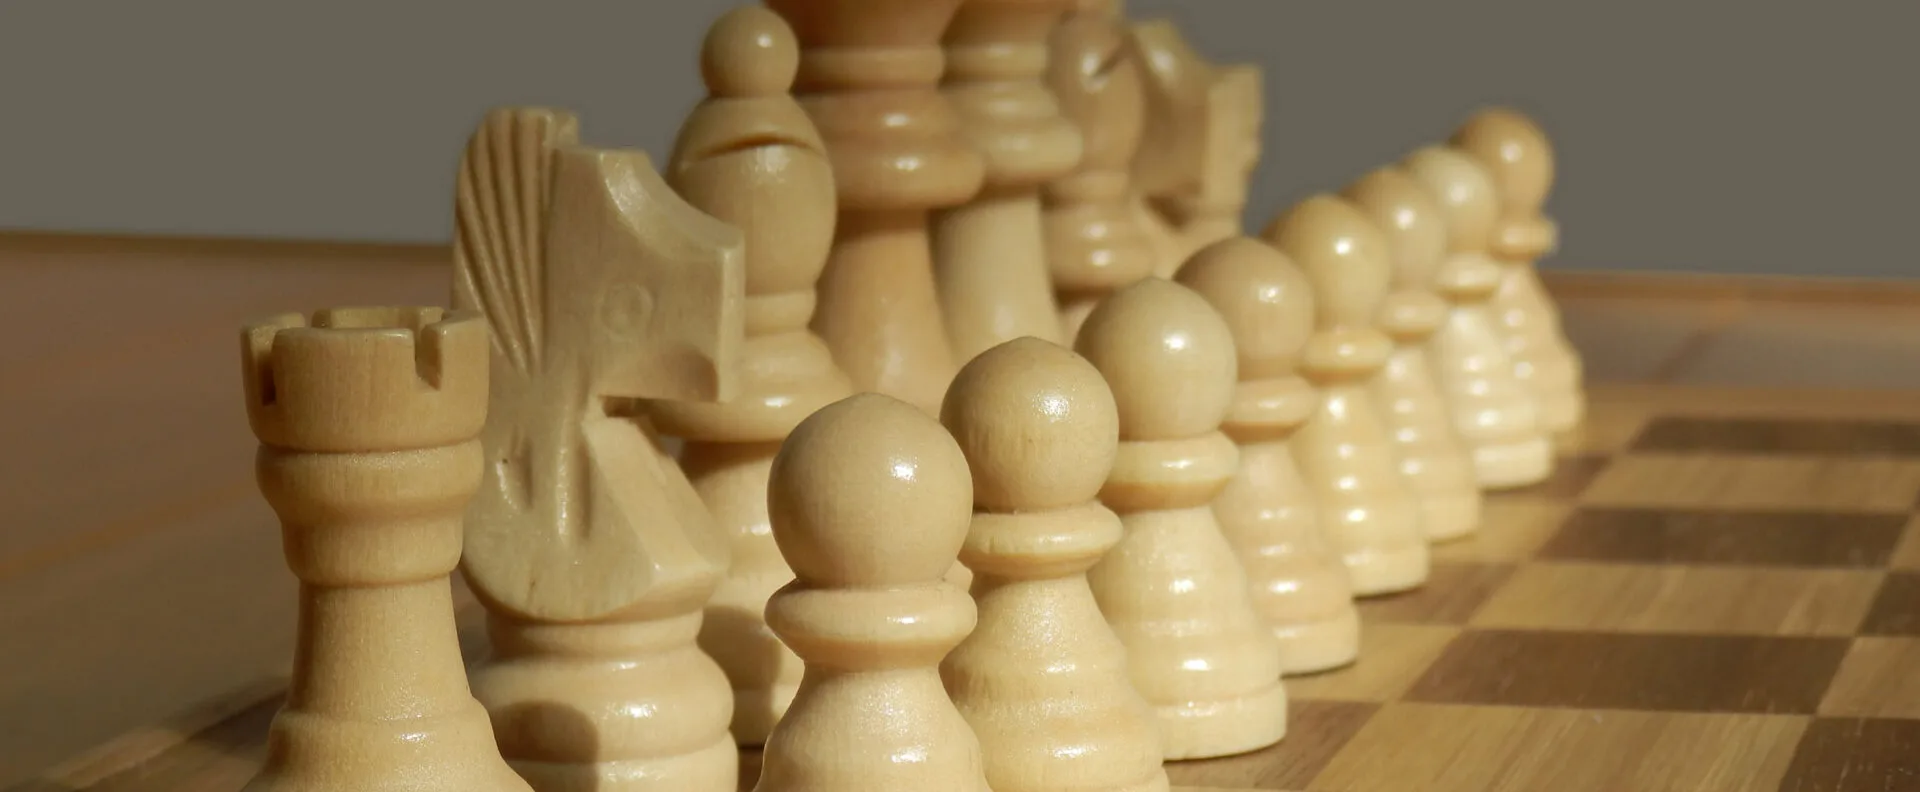 Ver categoría de ajedrez de viaje de madera